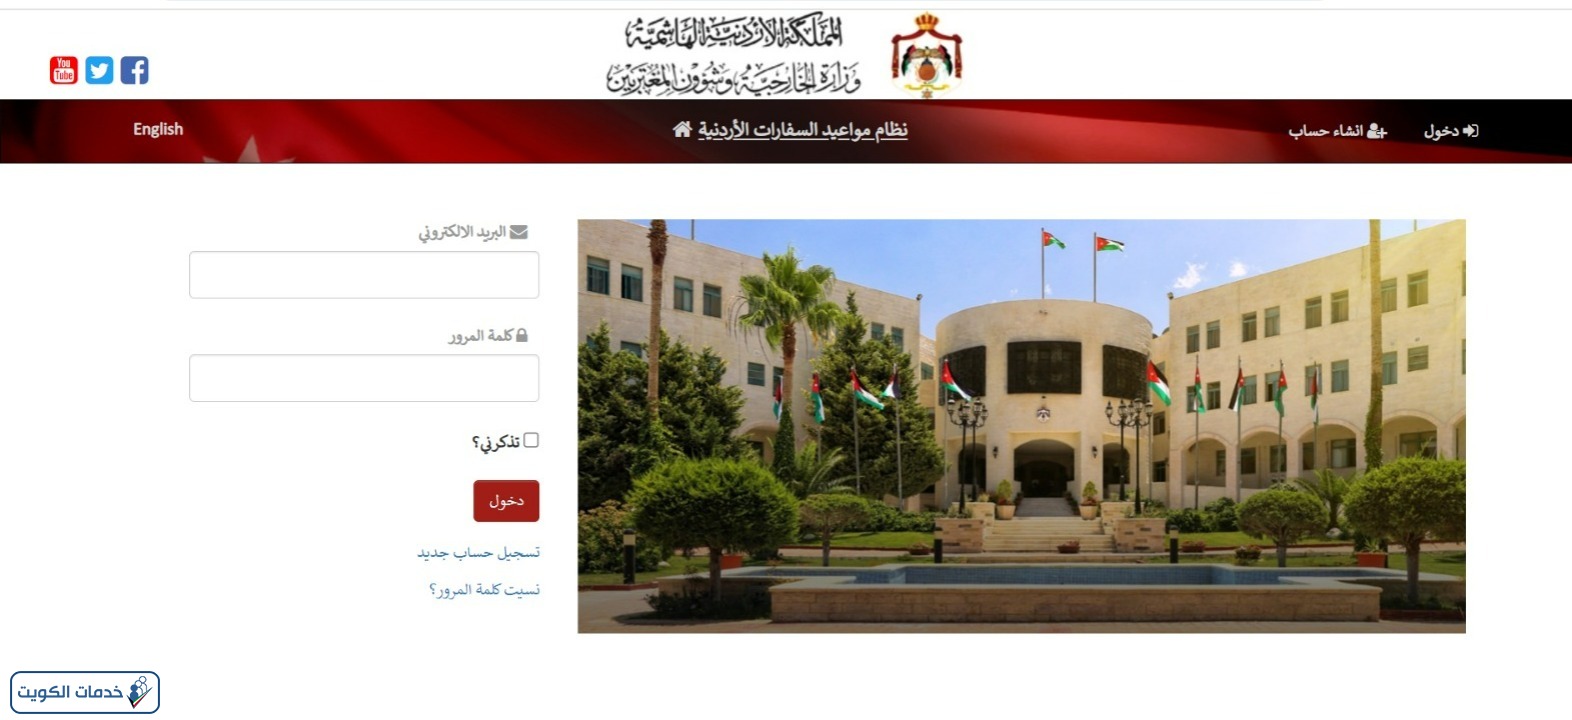 طريقة حجز موعد في السفارة الأردنية بالكويت